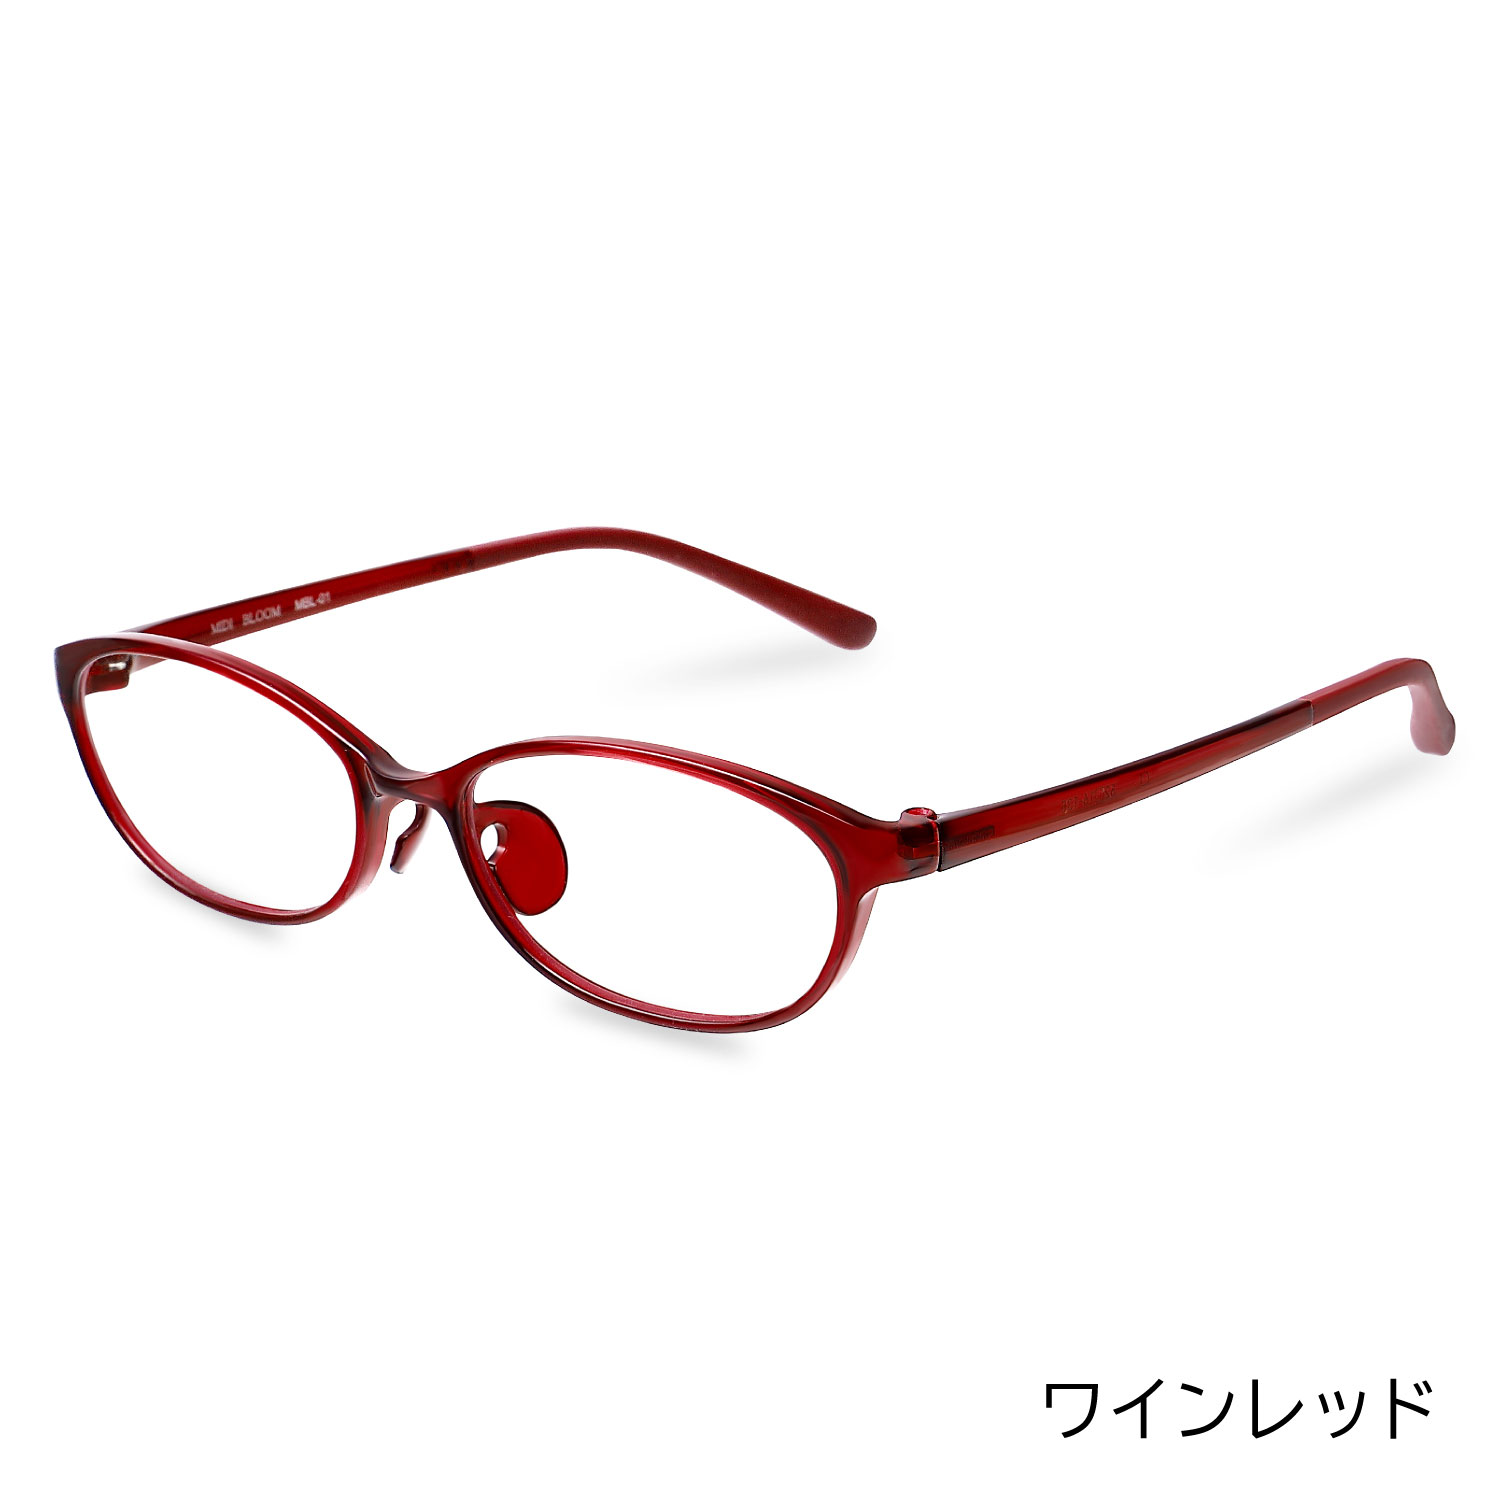 メガネ 度付き レディース おしゃれ 可愛い 眼鏡 度入り 度あり 度付きメガネ 乱視対応 乱視 近視 細い 軽い ズレ防止 メガネ通販 ブランド  MBL01NS